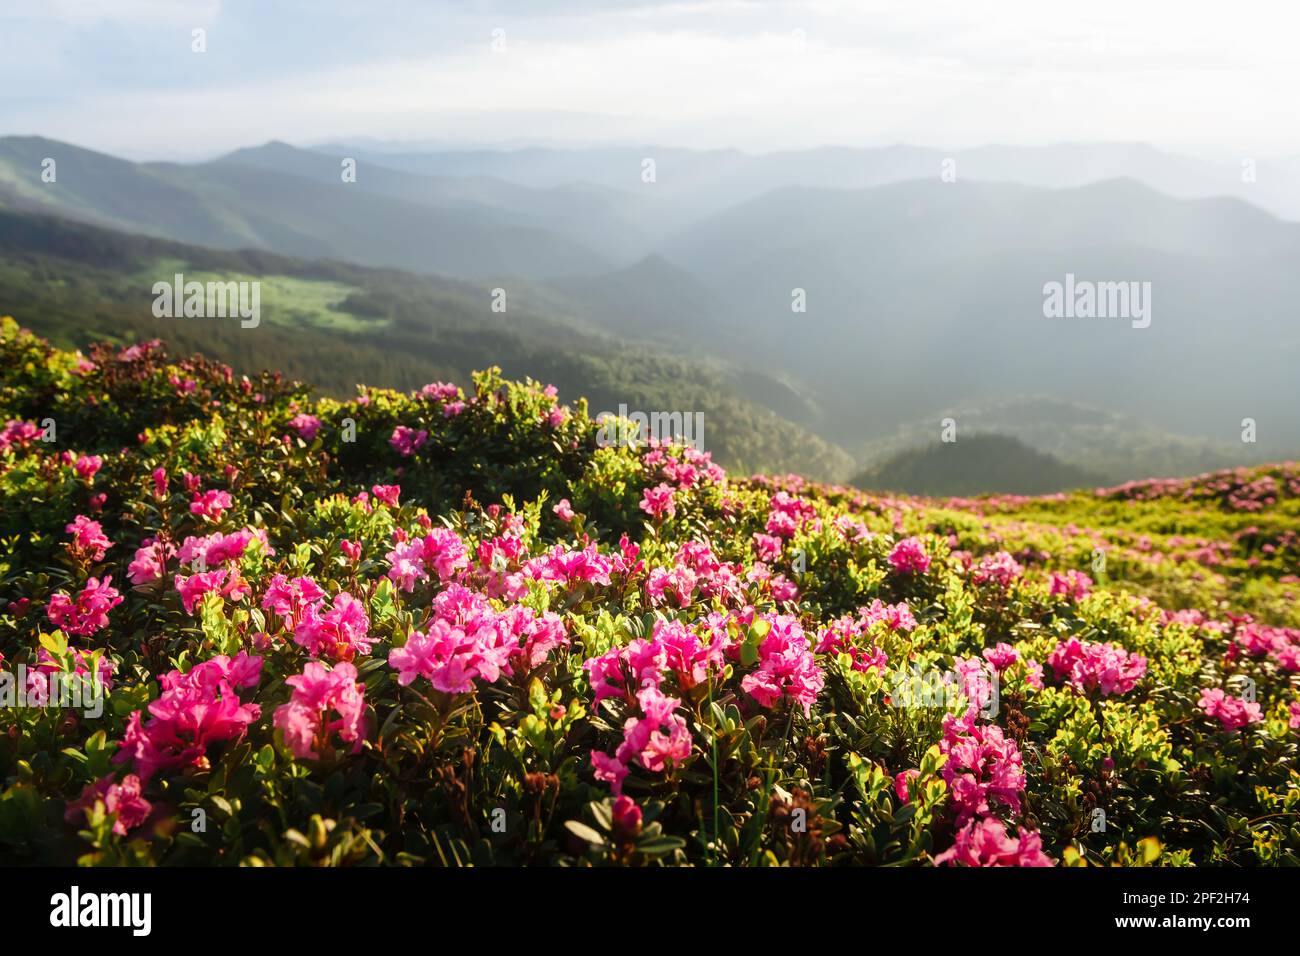 Magische rosafarbene Rhododendron-Blumen bedeckten die sommerliche Bergwiese. Unglaublicher Frühlingsmorgen in den Bergen mit atemberaubenden rosa Rhododendron-Blumen. Landschaftsfotografie Stockfoto